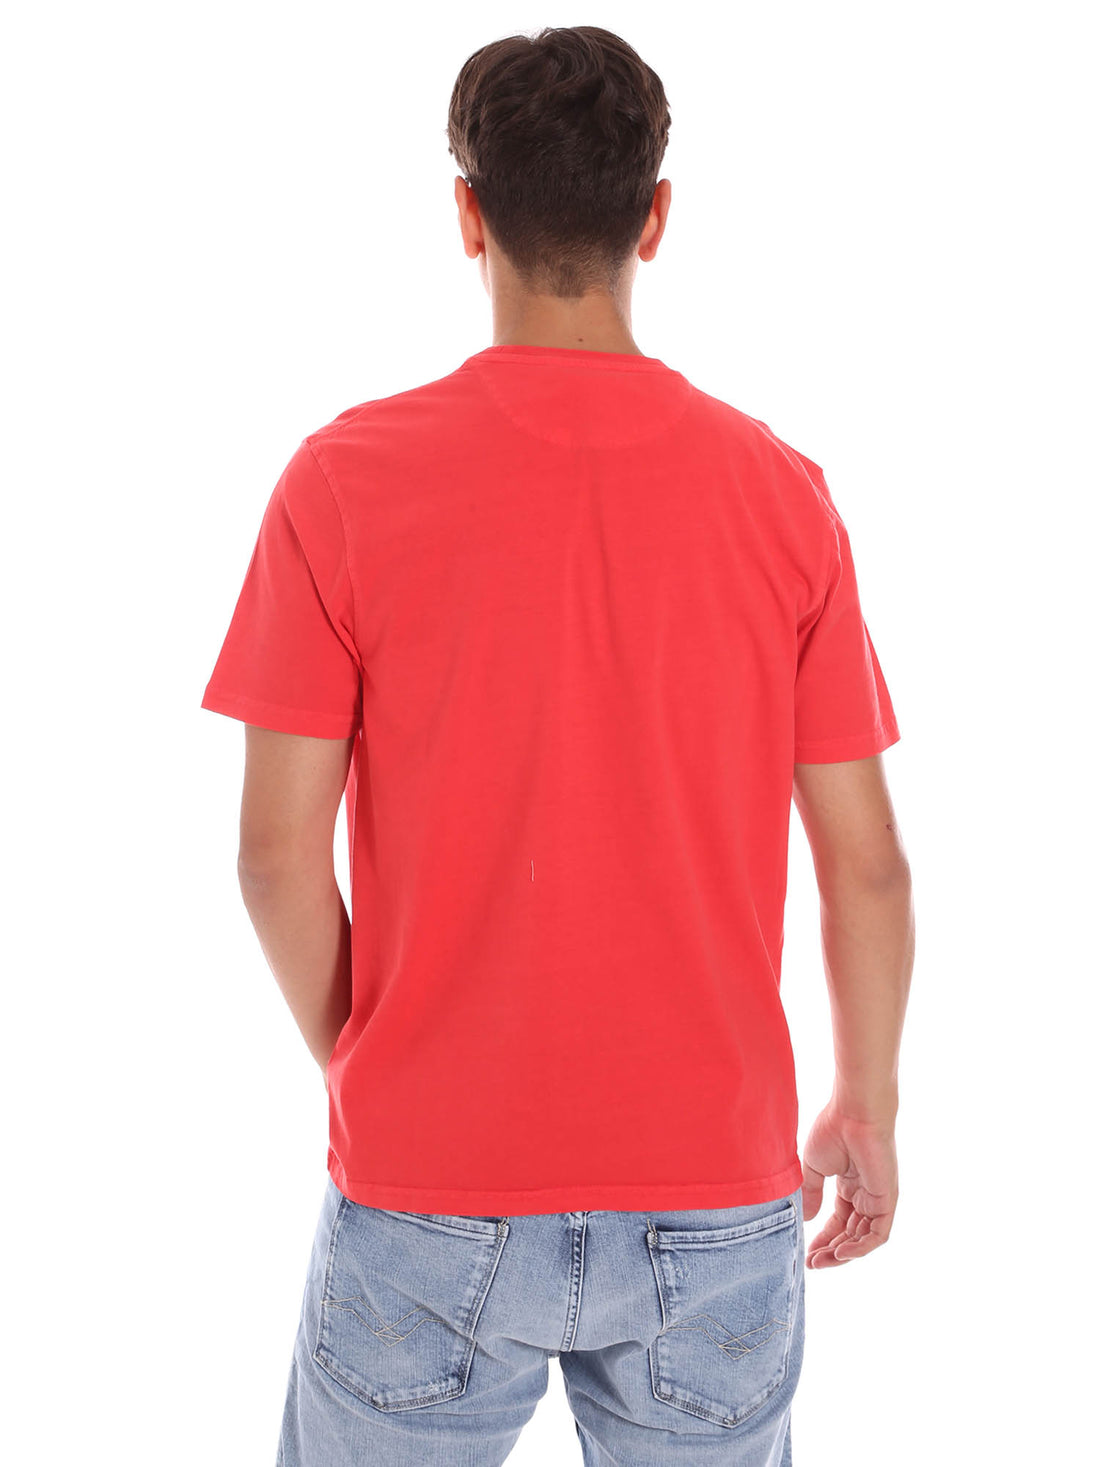 T-shirt Rosso 537xxx Ciesse Piumini